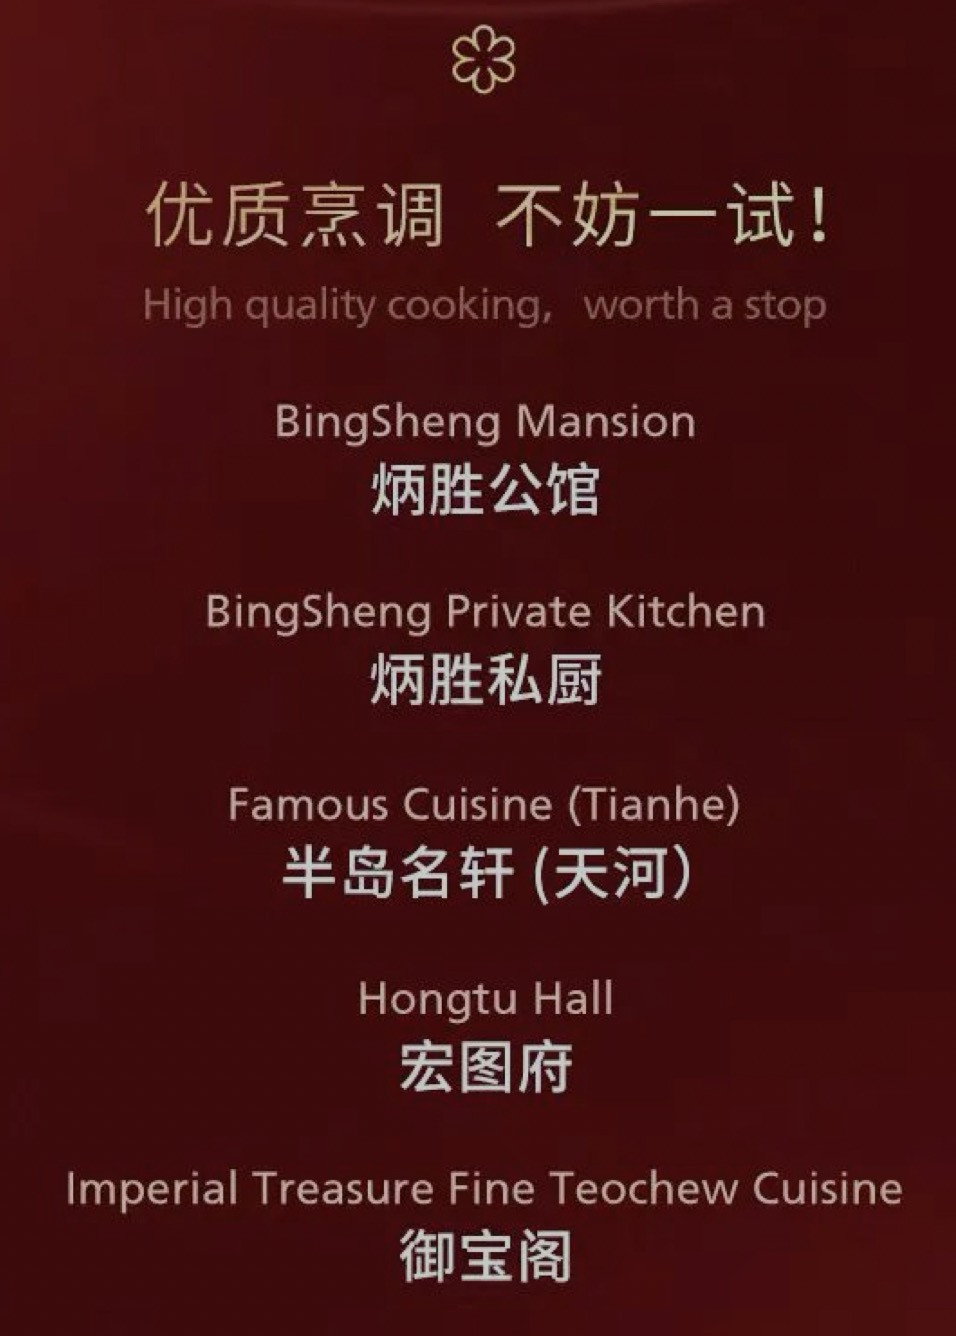 2022广州米其林指南榜单发布 继续没有餐厅摘得3星 1星餐厅2家新上榜